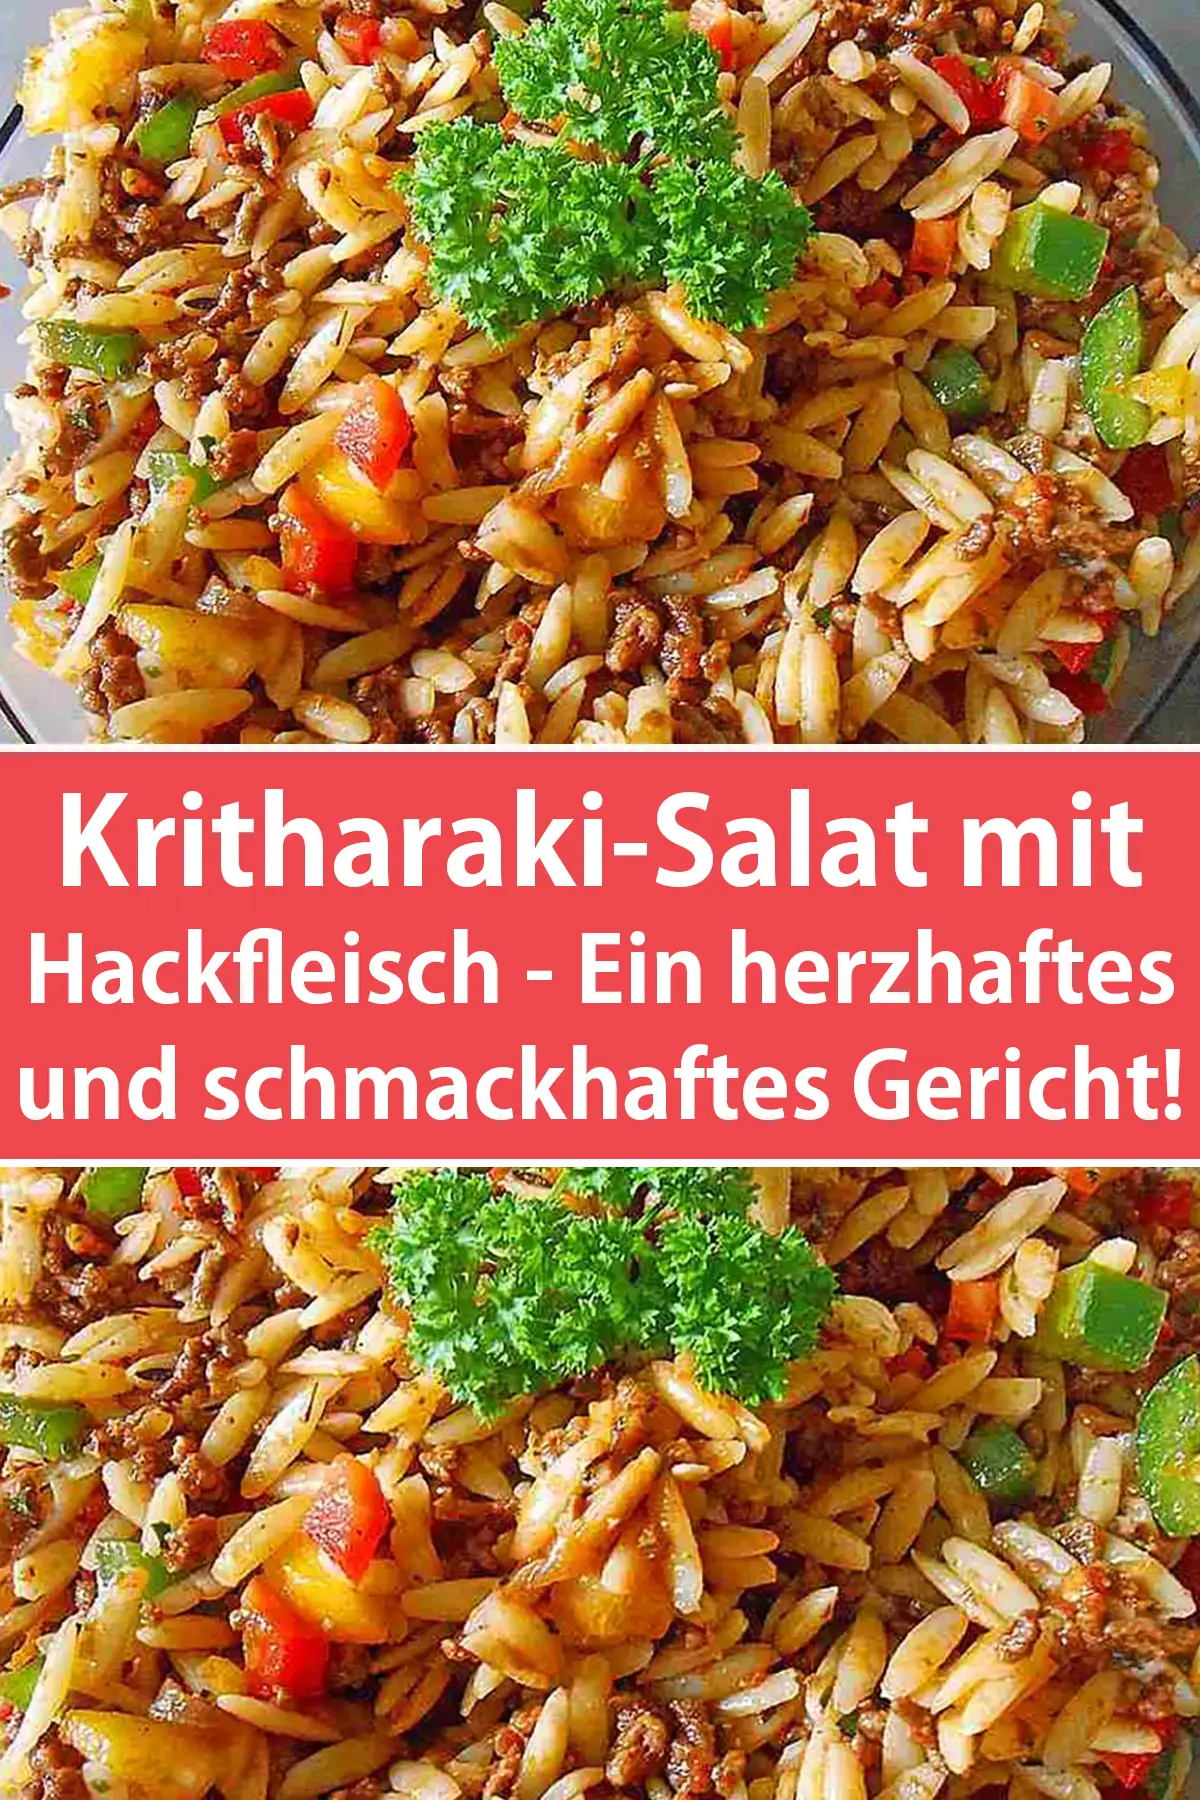 Kritharaki-Salat mit Hackfleisch - Ein herzhaftes und schmackhaftes Gericht!